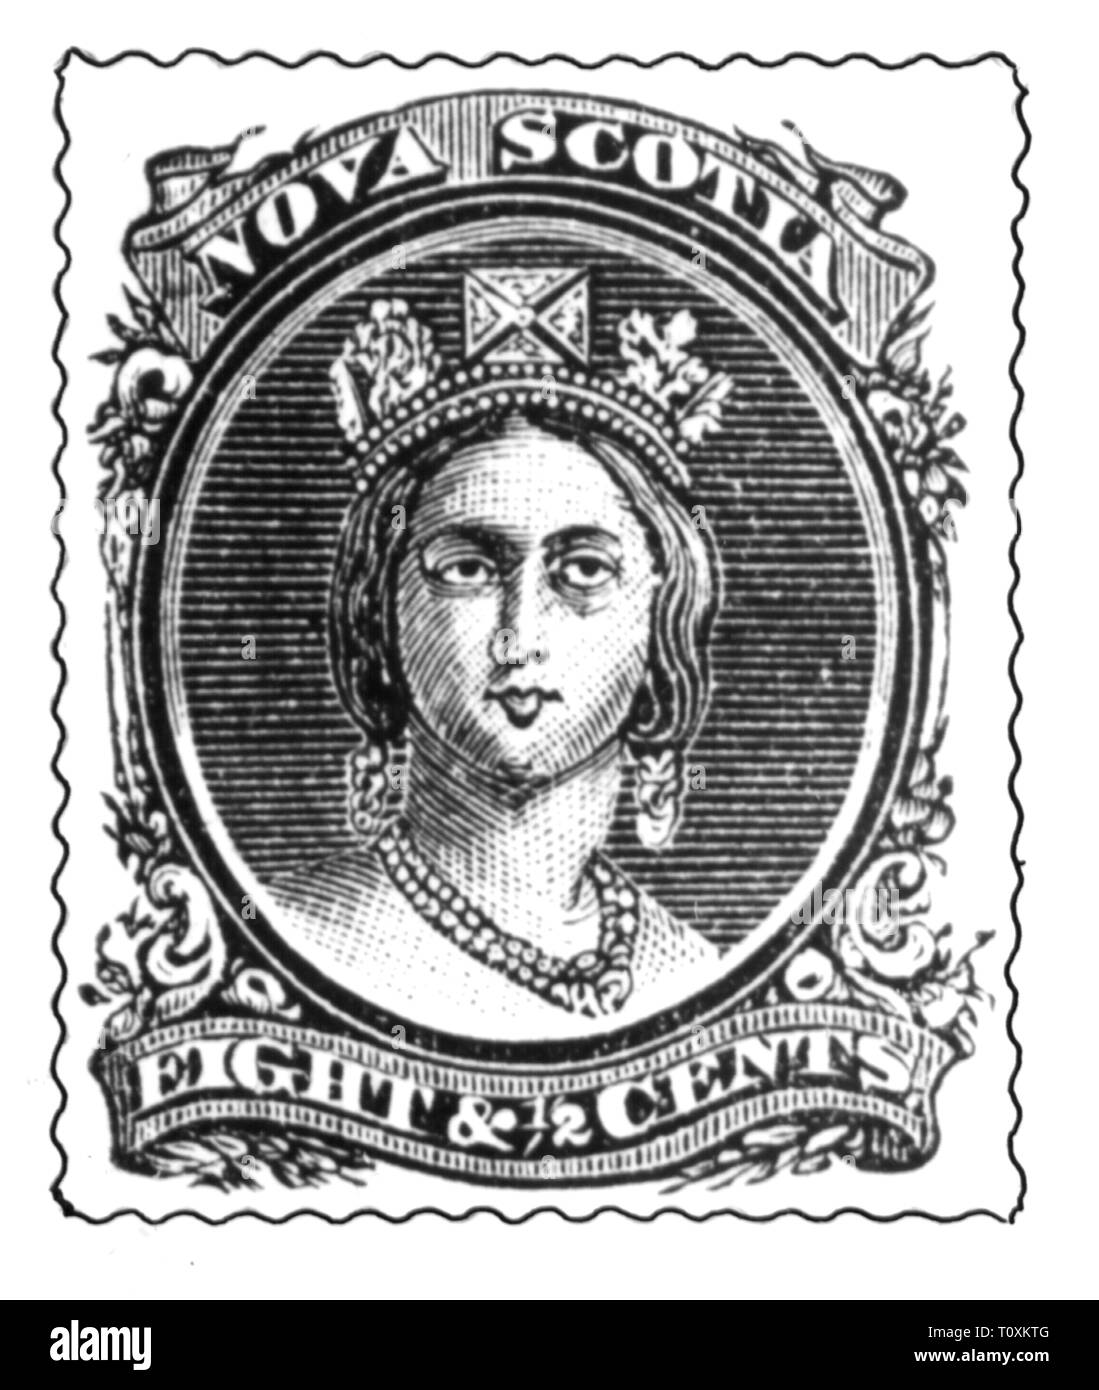 La poste, timbres-poste, du Canada, de la Nouvelle-Écosse, 8 1/2 100 Timbre-poste, portrait de la reine Victoria I, date de publication : 1860, Additional-Rights Clearance-Info-Not-Available- Banque D'Images